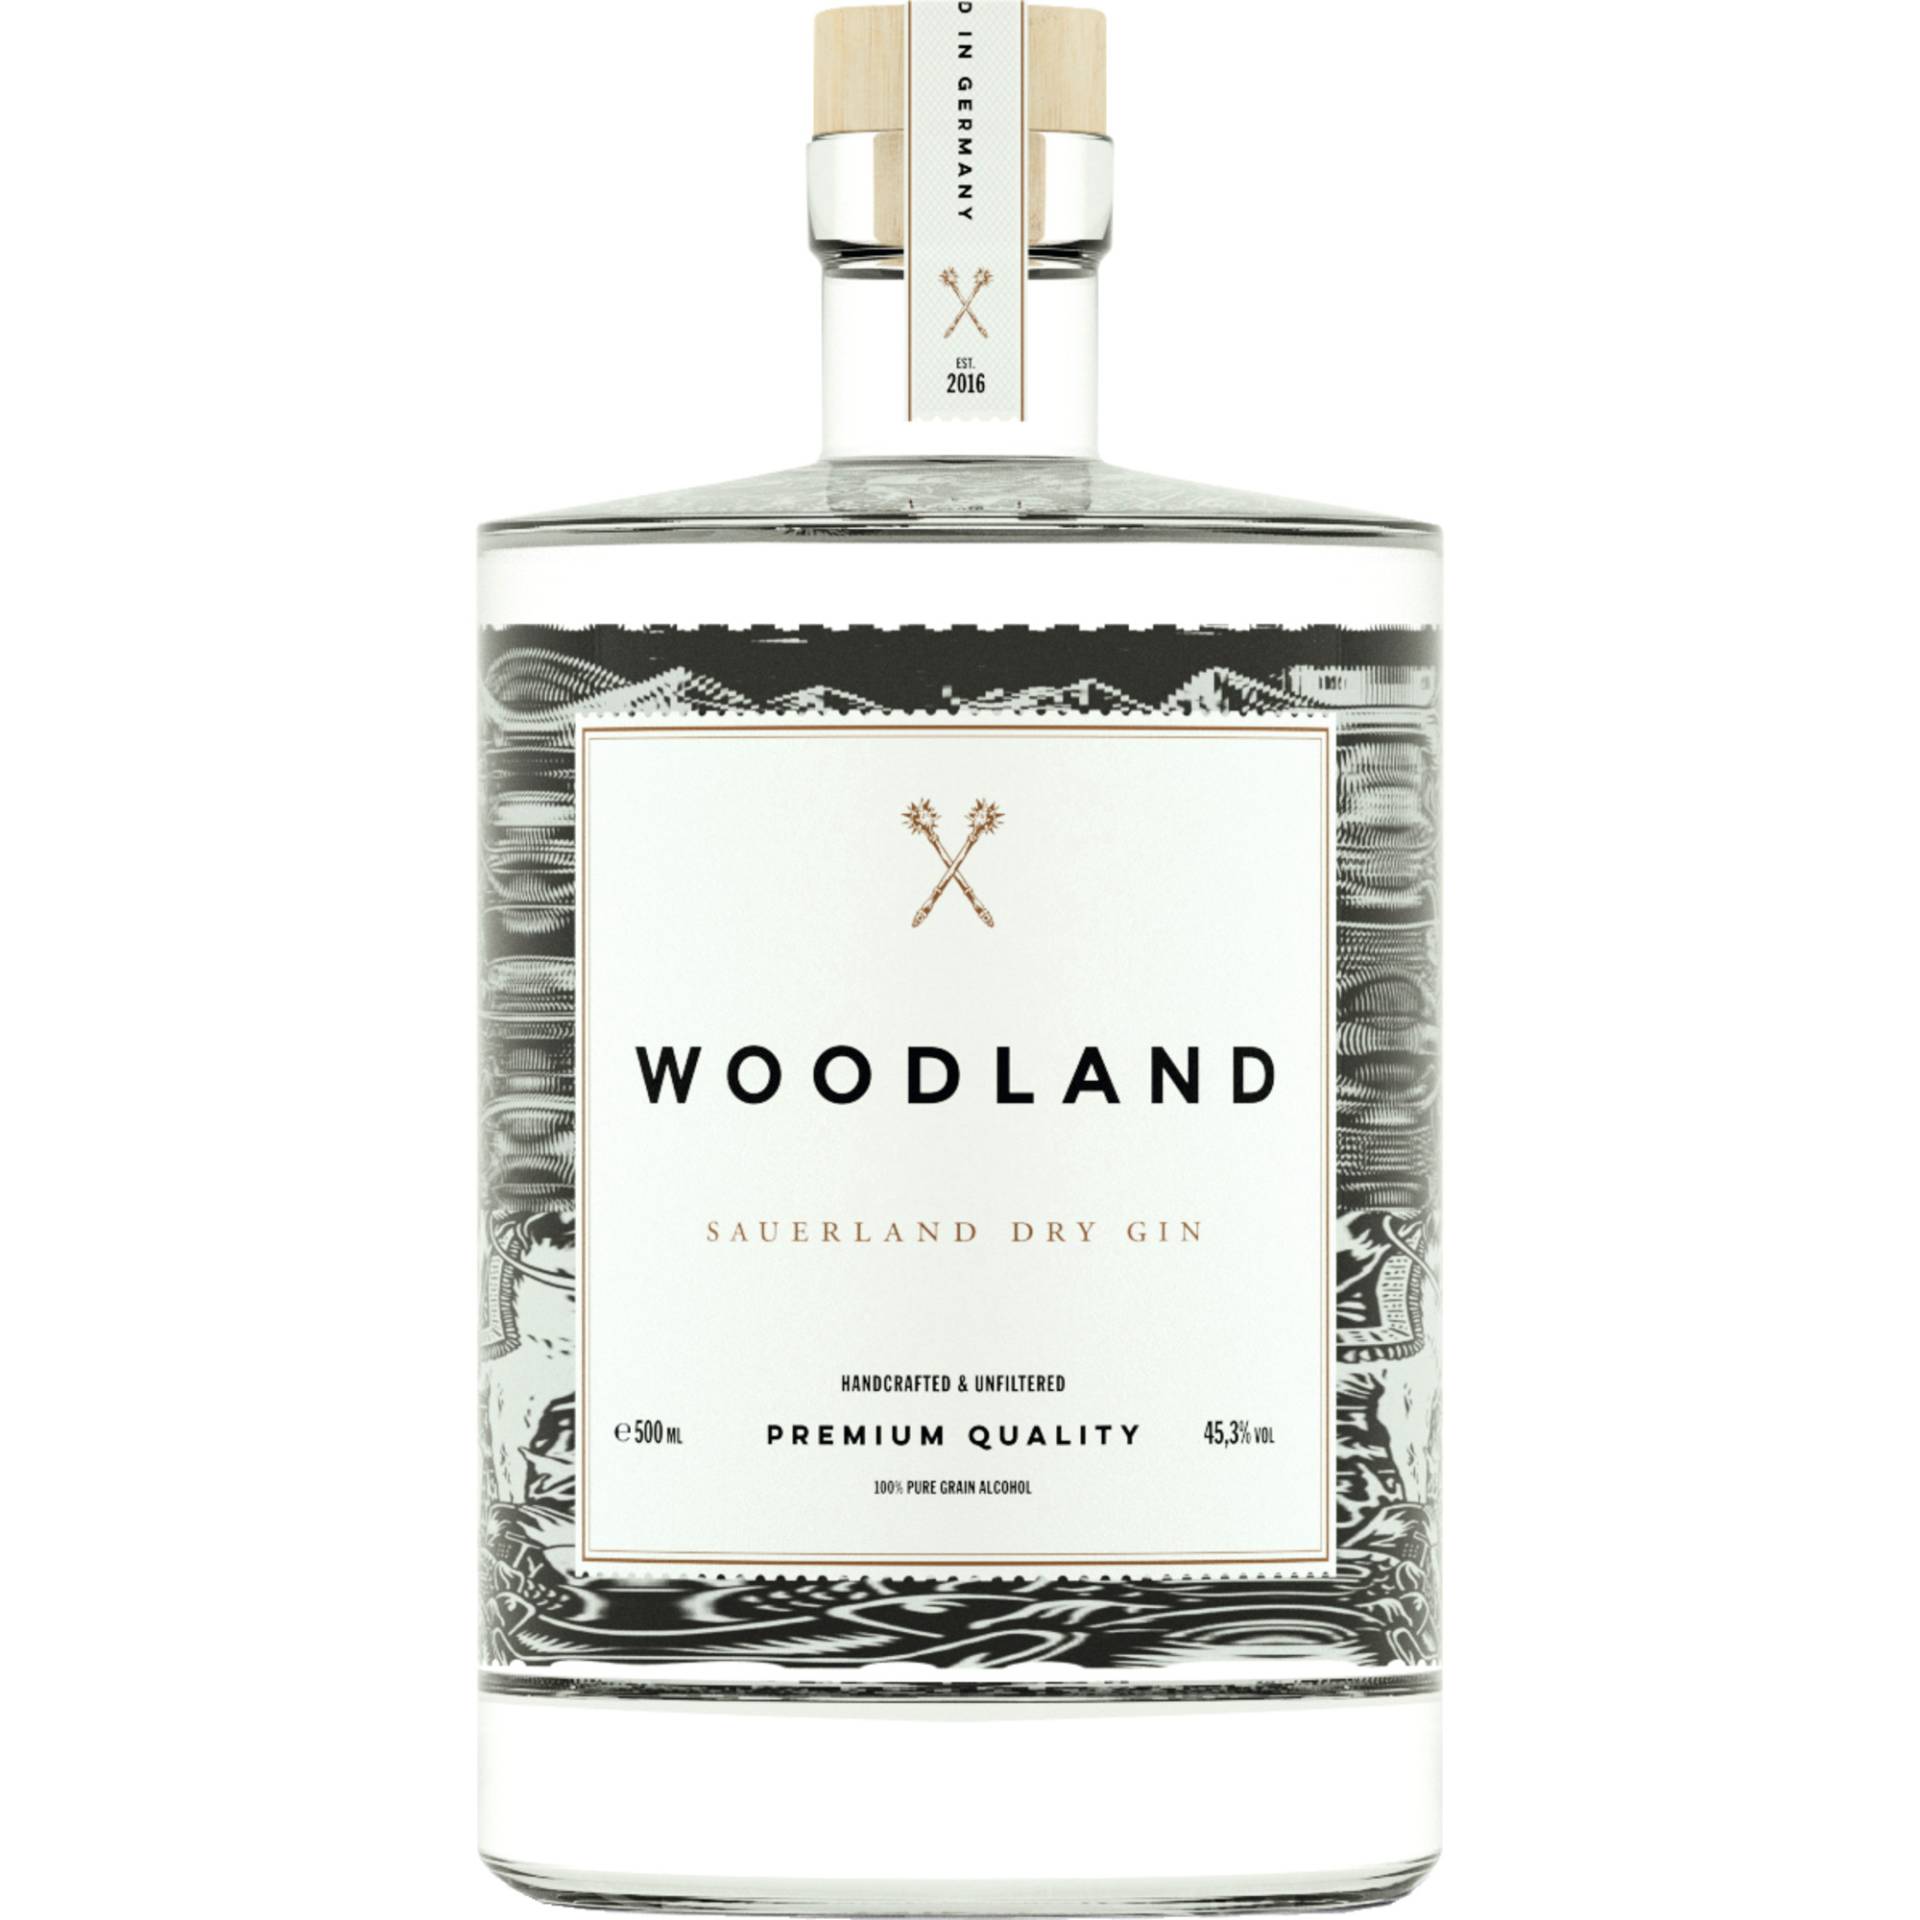 Woodland Sauerland Dry Gin, 45,3 % vol. 0,5 L, Spirituosen von Sauerland Distillers, Thünenstrasse 11, D - 58511 Lüdenscheid